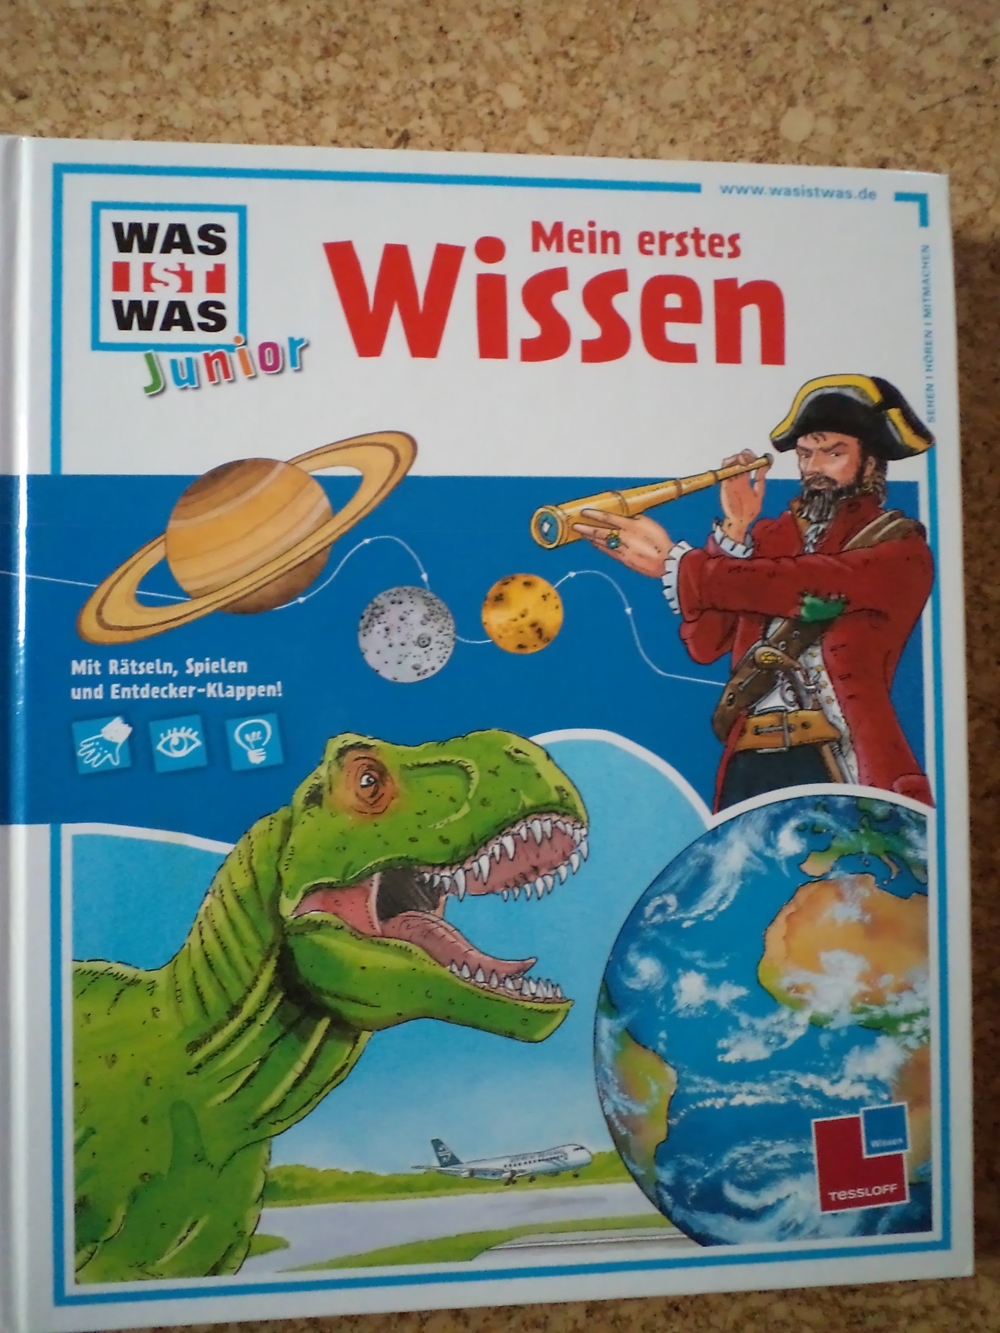 Lernbuch WAS IST WAS Junior: Mein erstes Wissen (ISBN 978-3-7886-1955-8), 1a Zustand, wenig benutzt